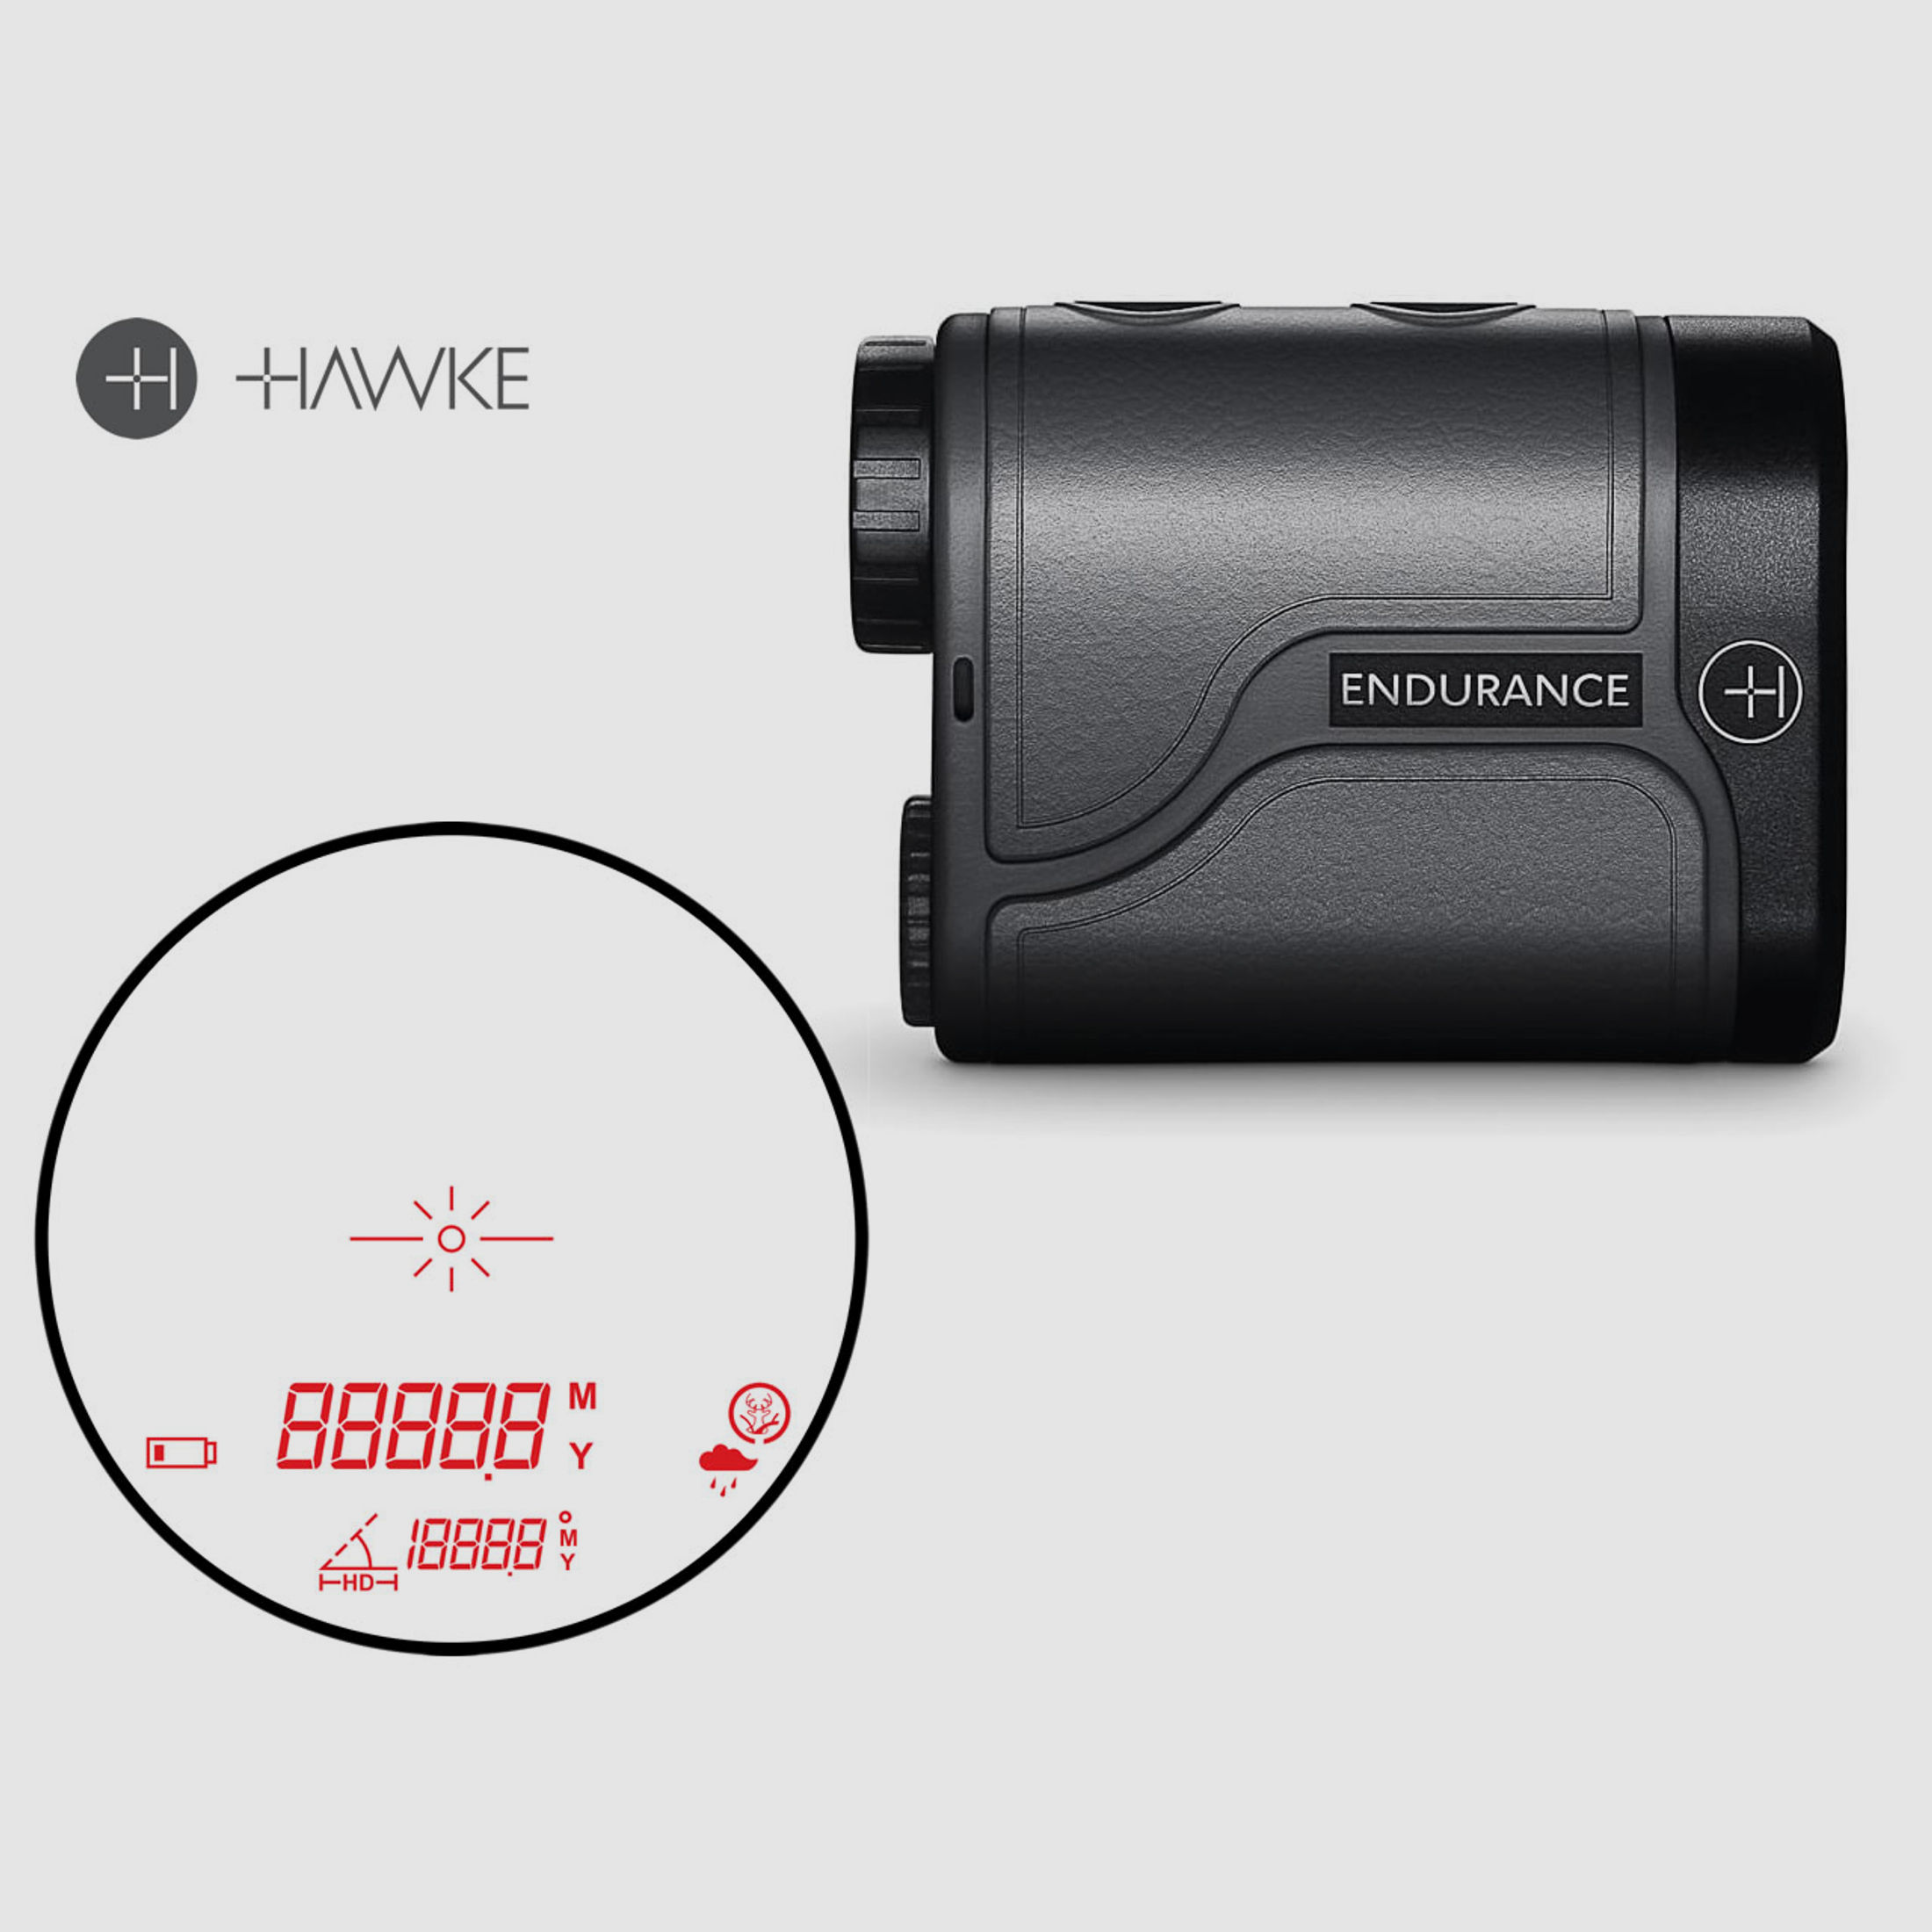 HAWKE Entfernungsmesser Laser Range Finder ENDURANCE 1500, 5 m bis 1500 m, 6-fach Zoom